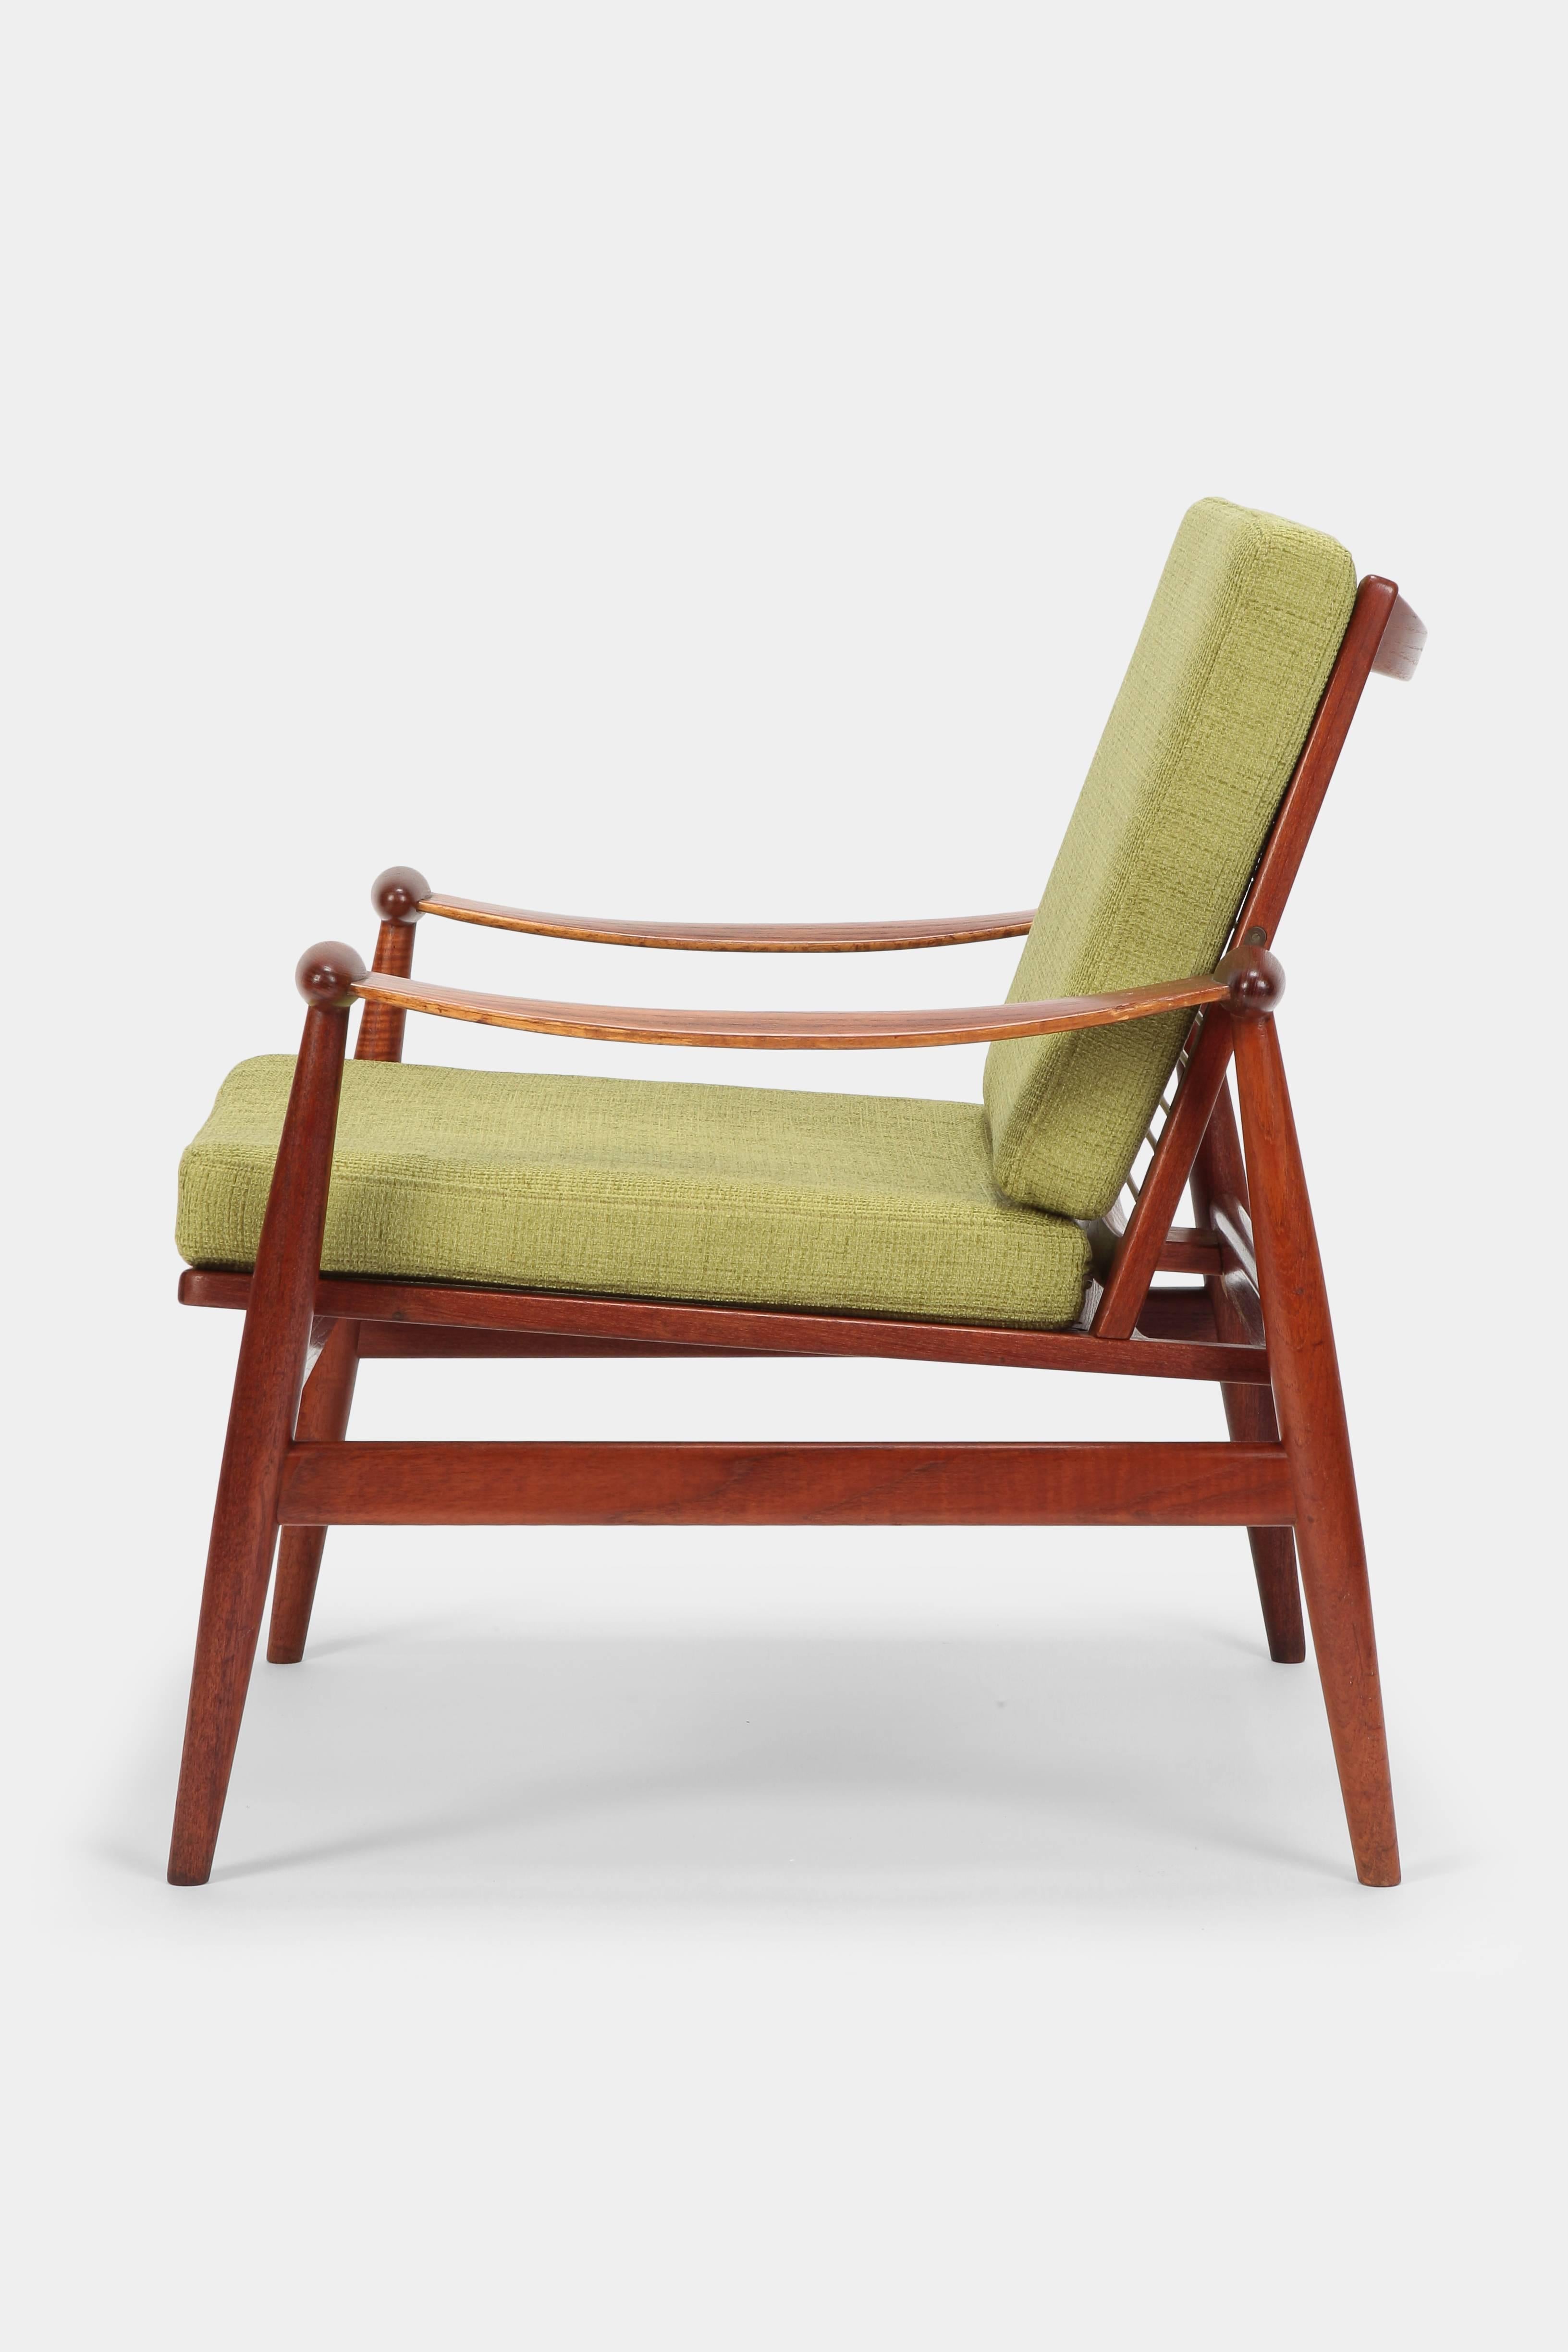 Cotton Finn Juhl “Spade” Lounge Chairs France & Daverkosen, 1960s